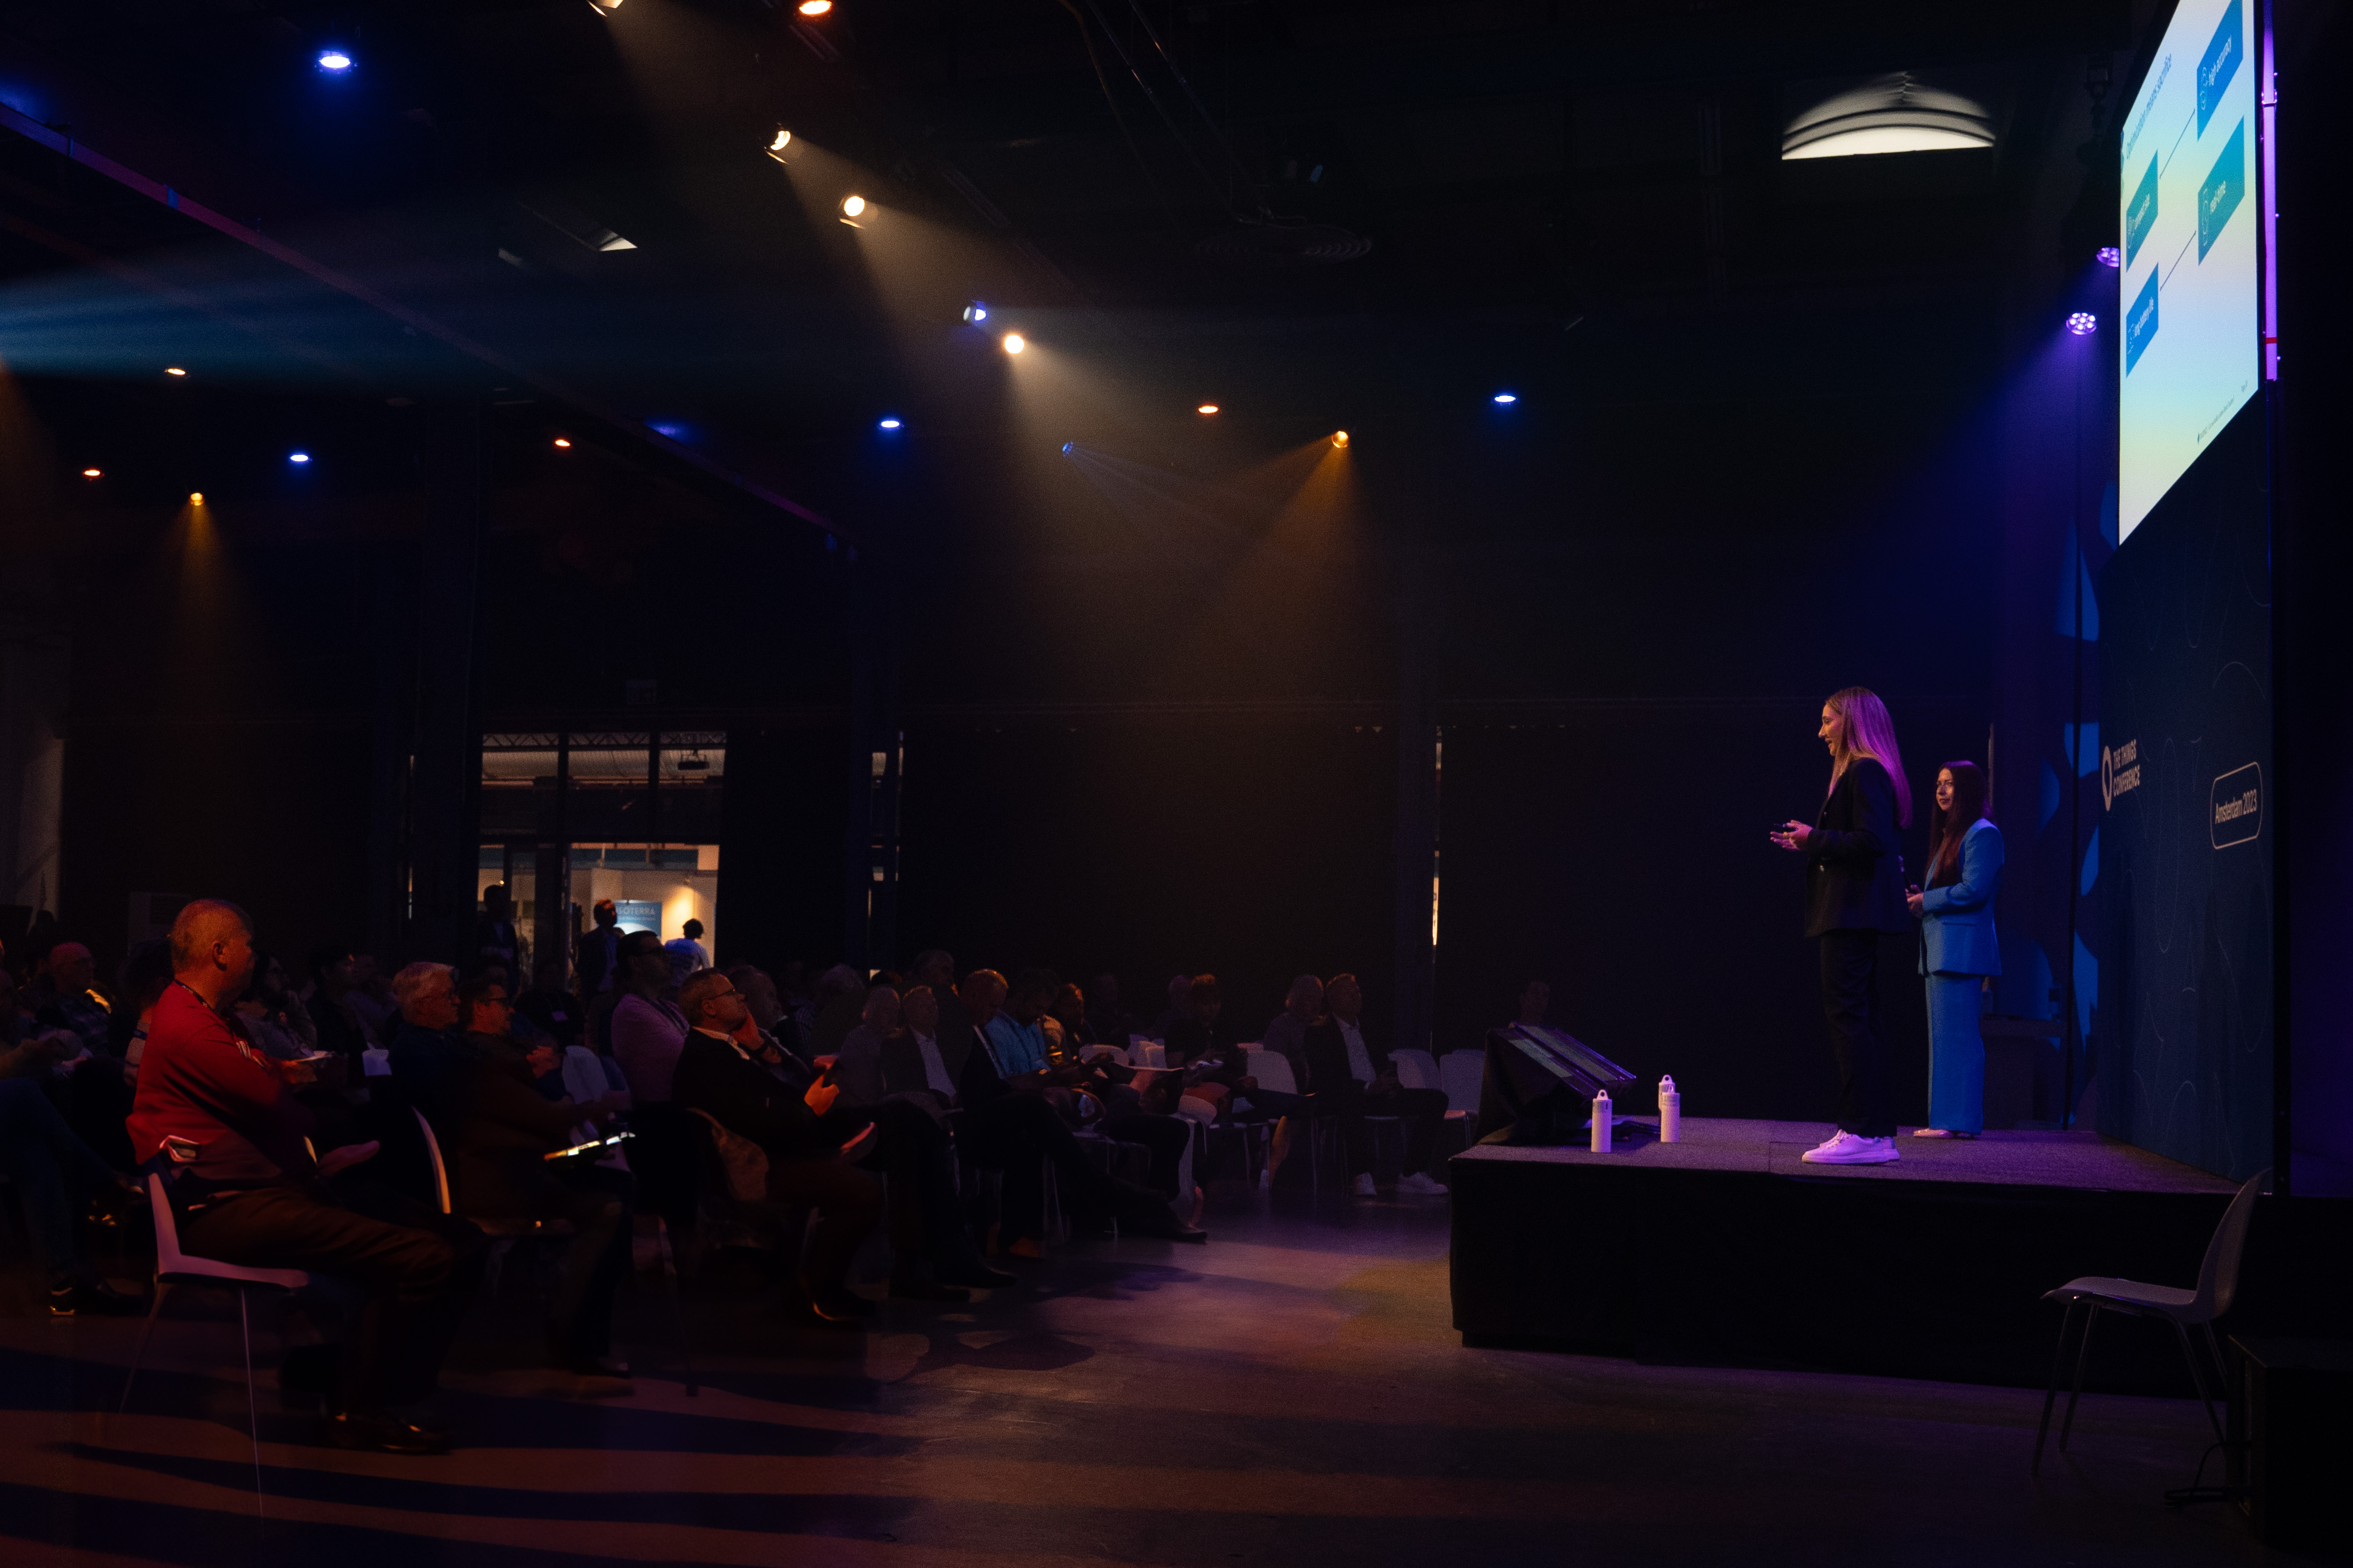 المديرة التنفيذية كيارا كوبمانز تطلق تروفامي على المسرح في مؤتمر الأشياء في أمستردام (الصورة: بزنيس واير)